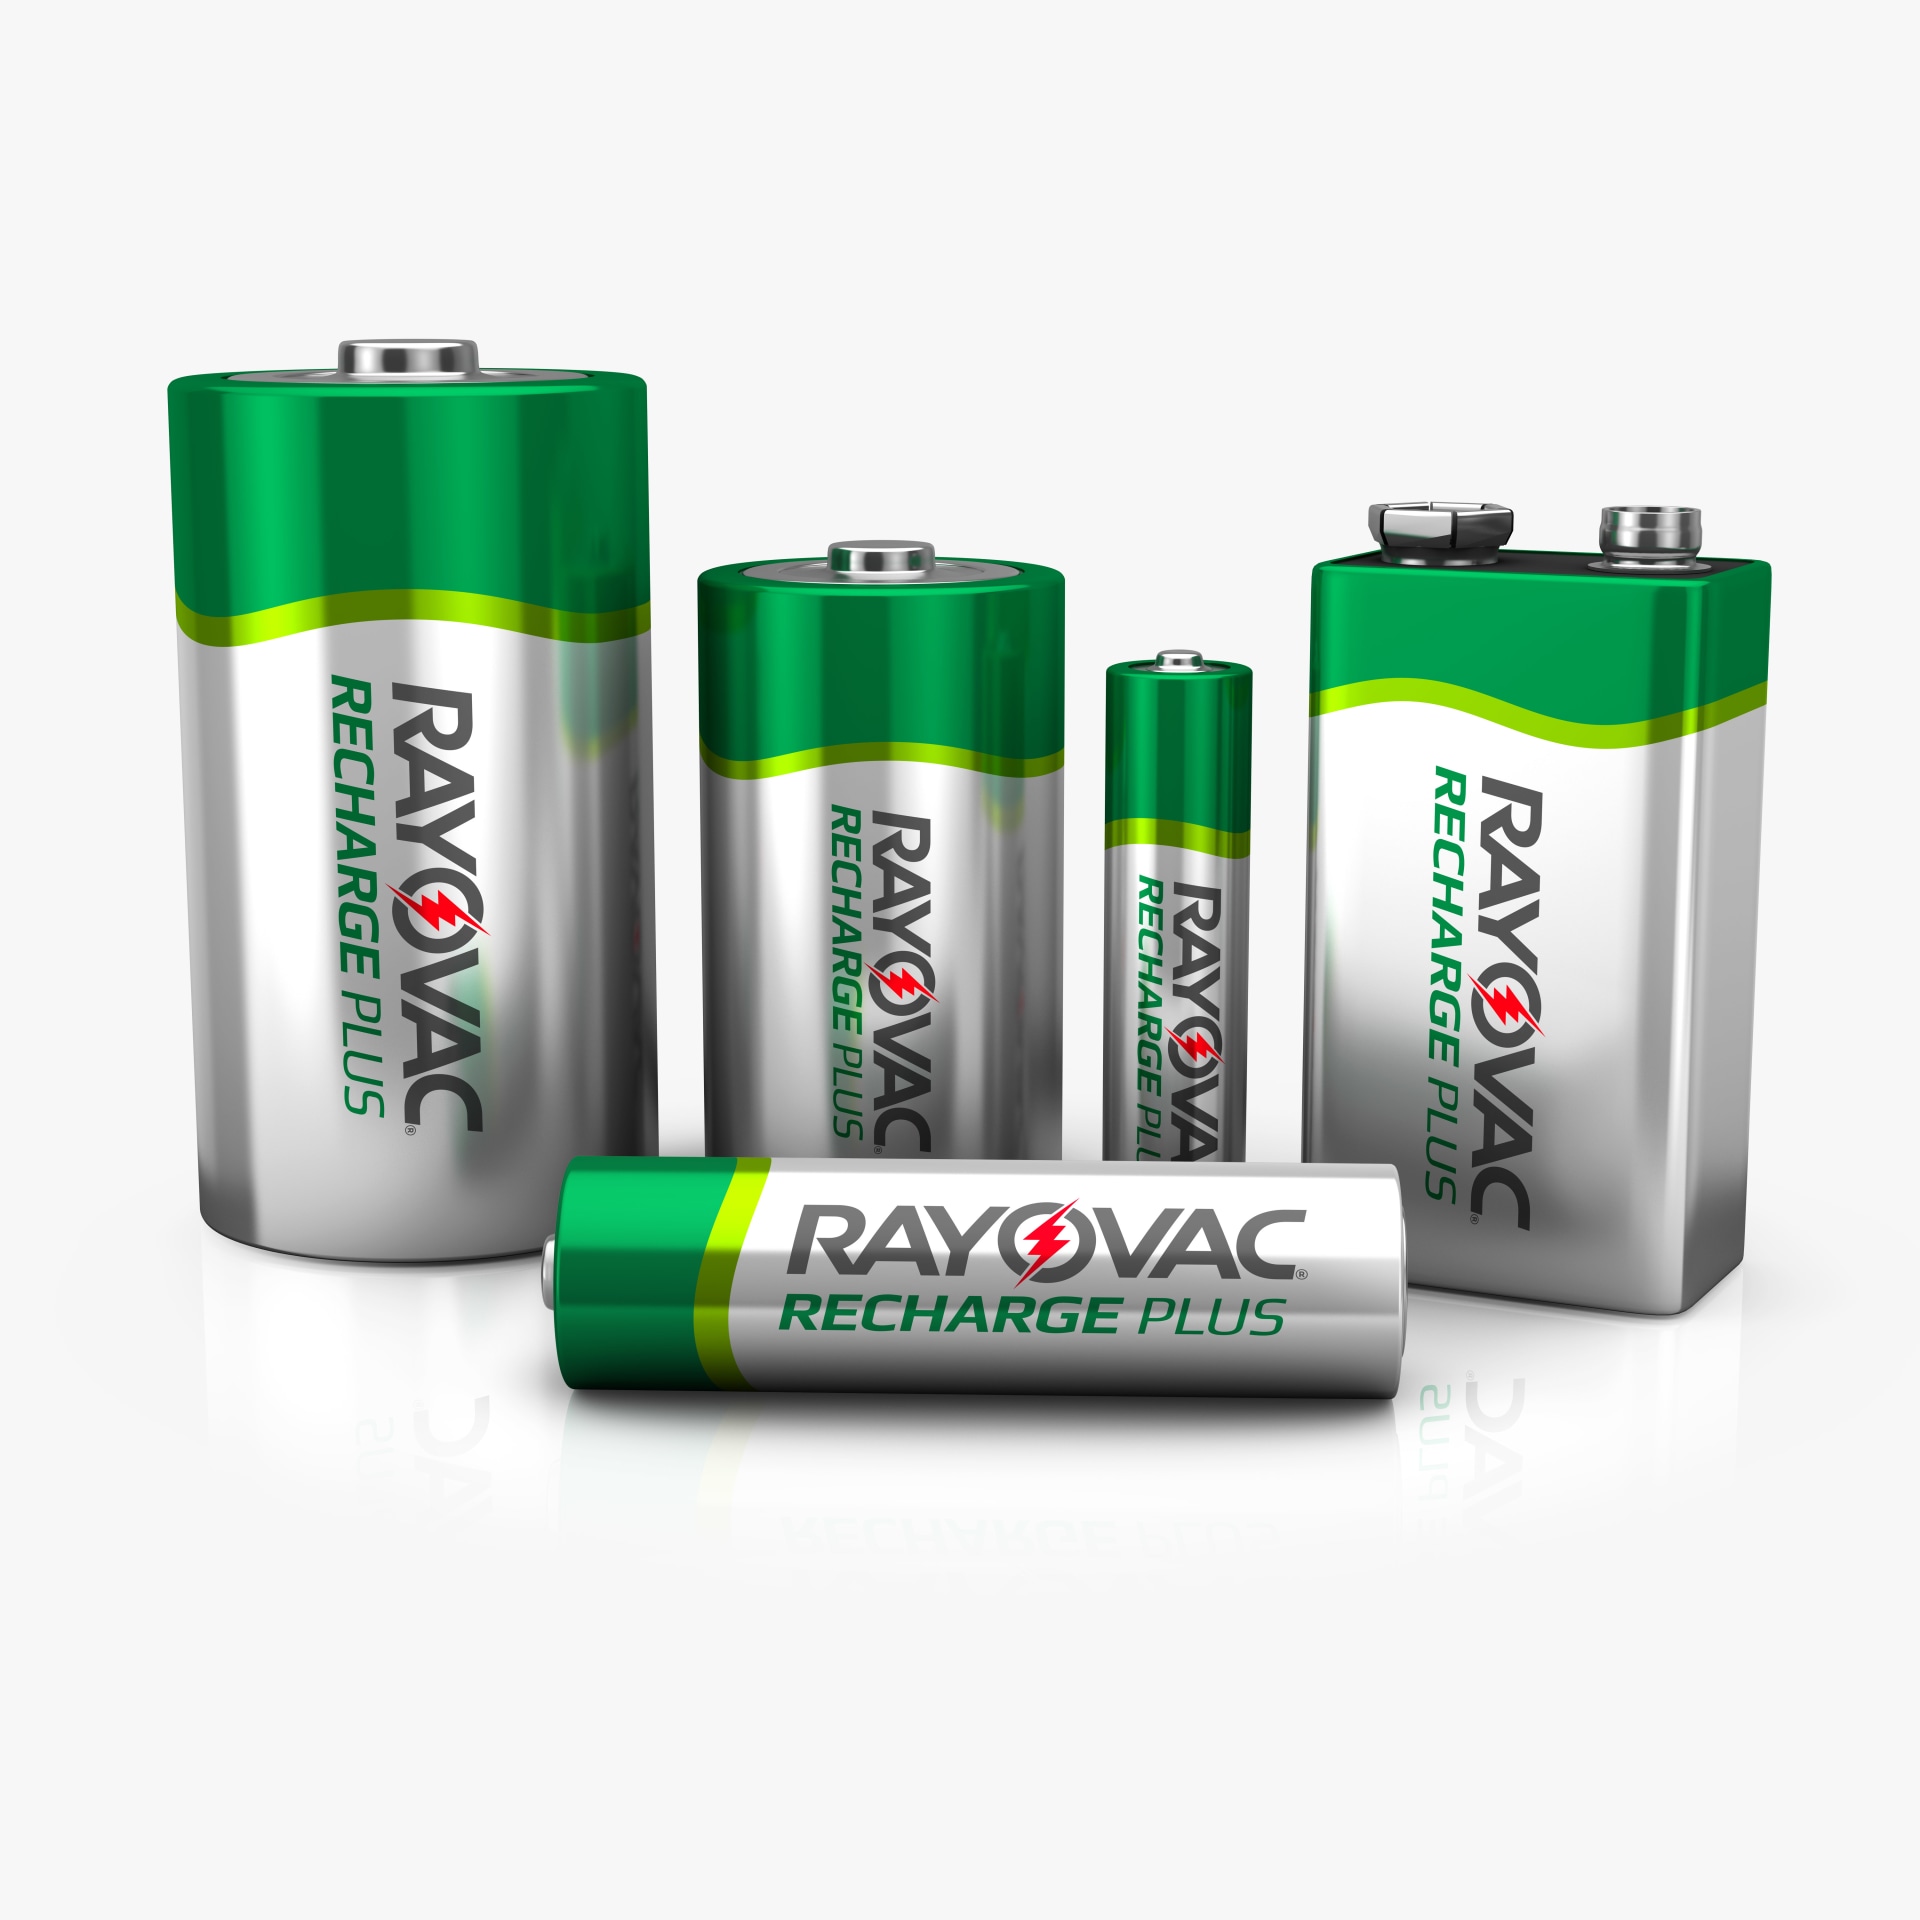 Batteries plus. Батарейки райовак. Батарейки powerful +. Battery Plus Энергетик. Av Power Batteries.